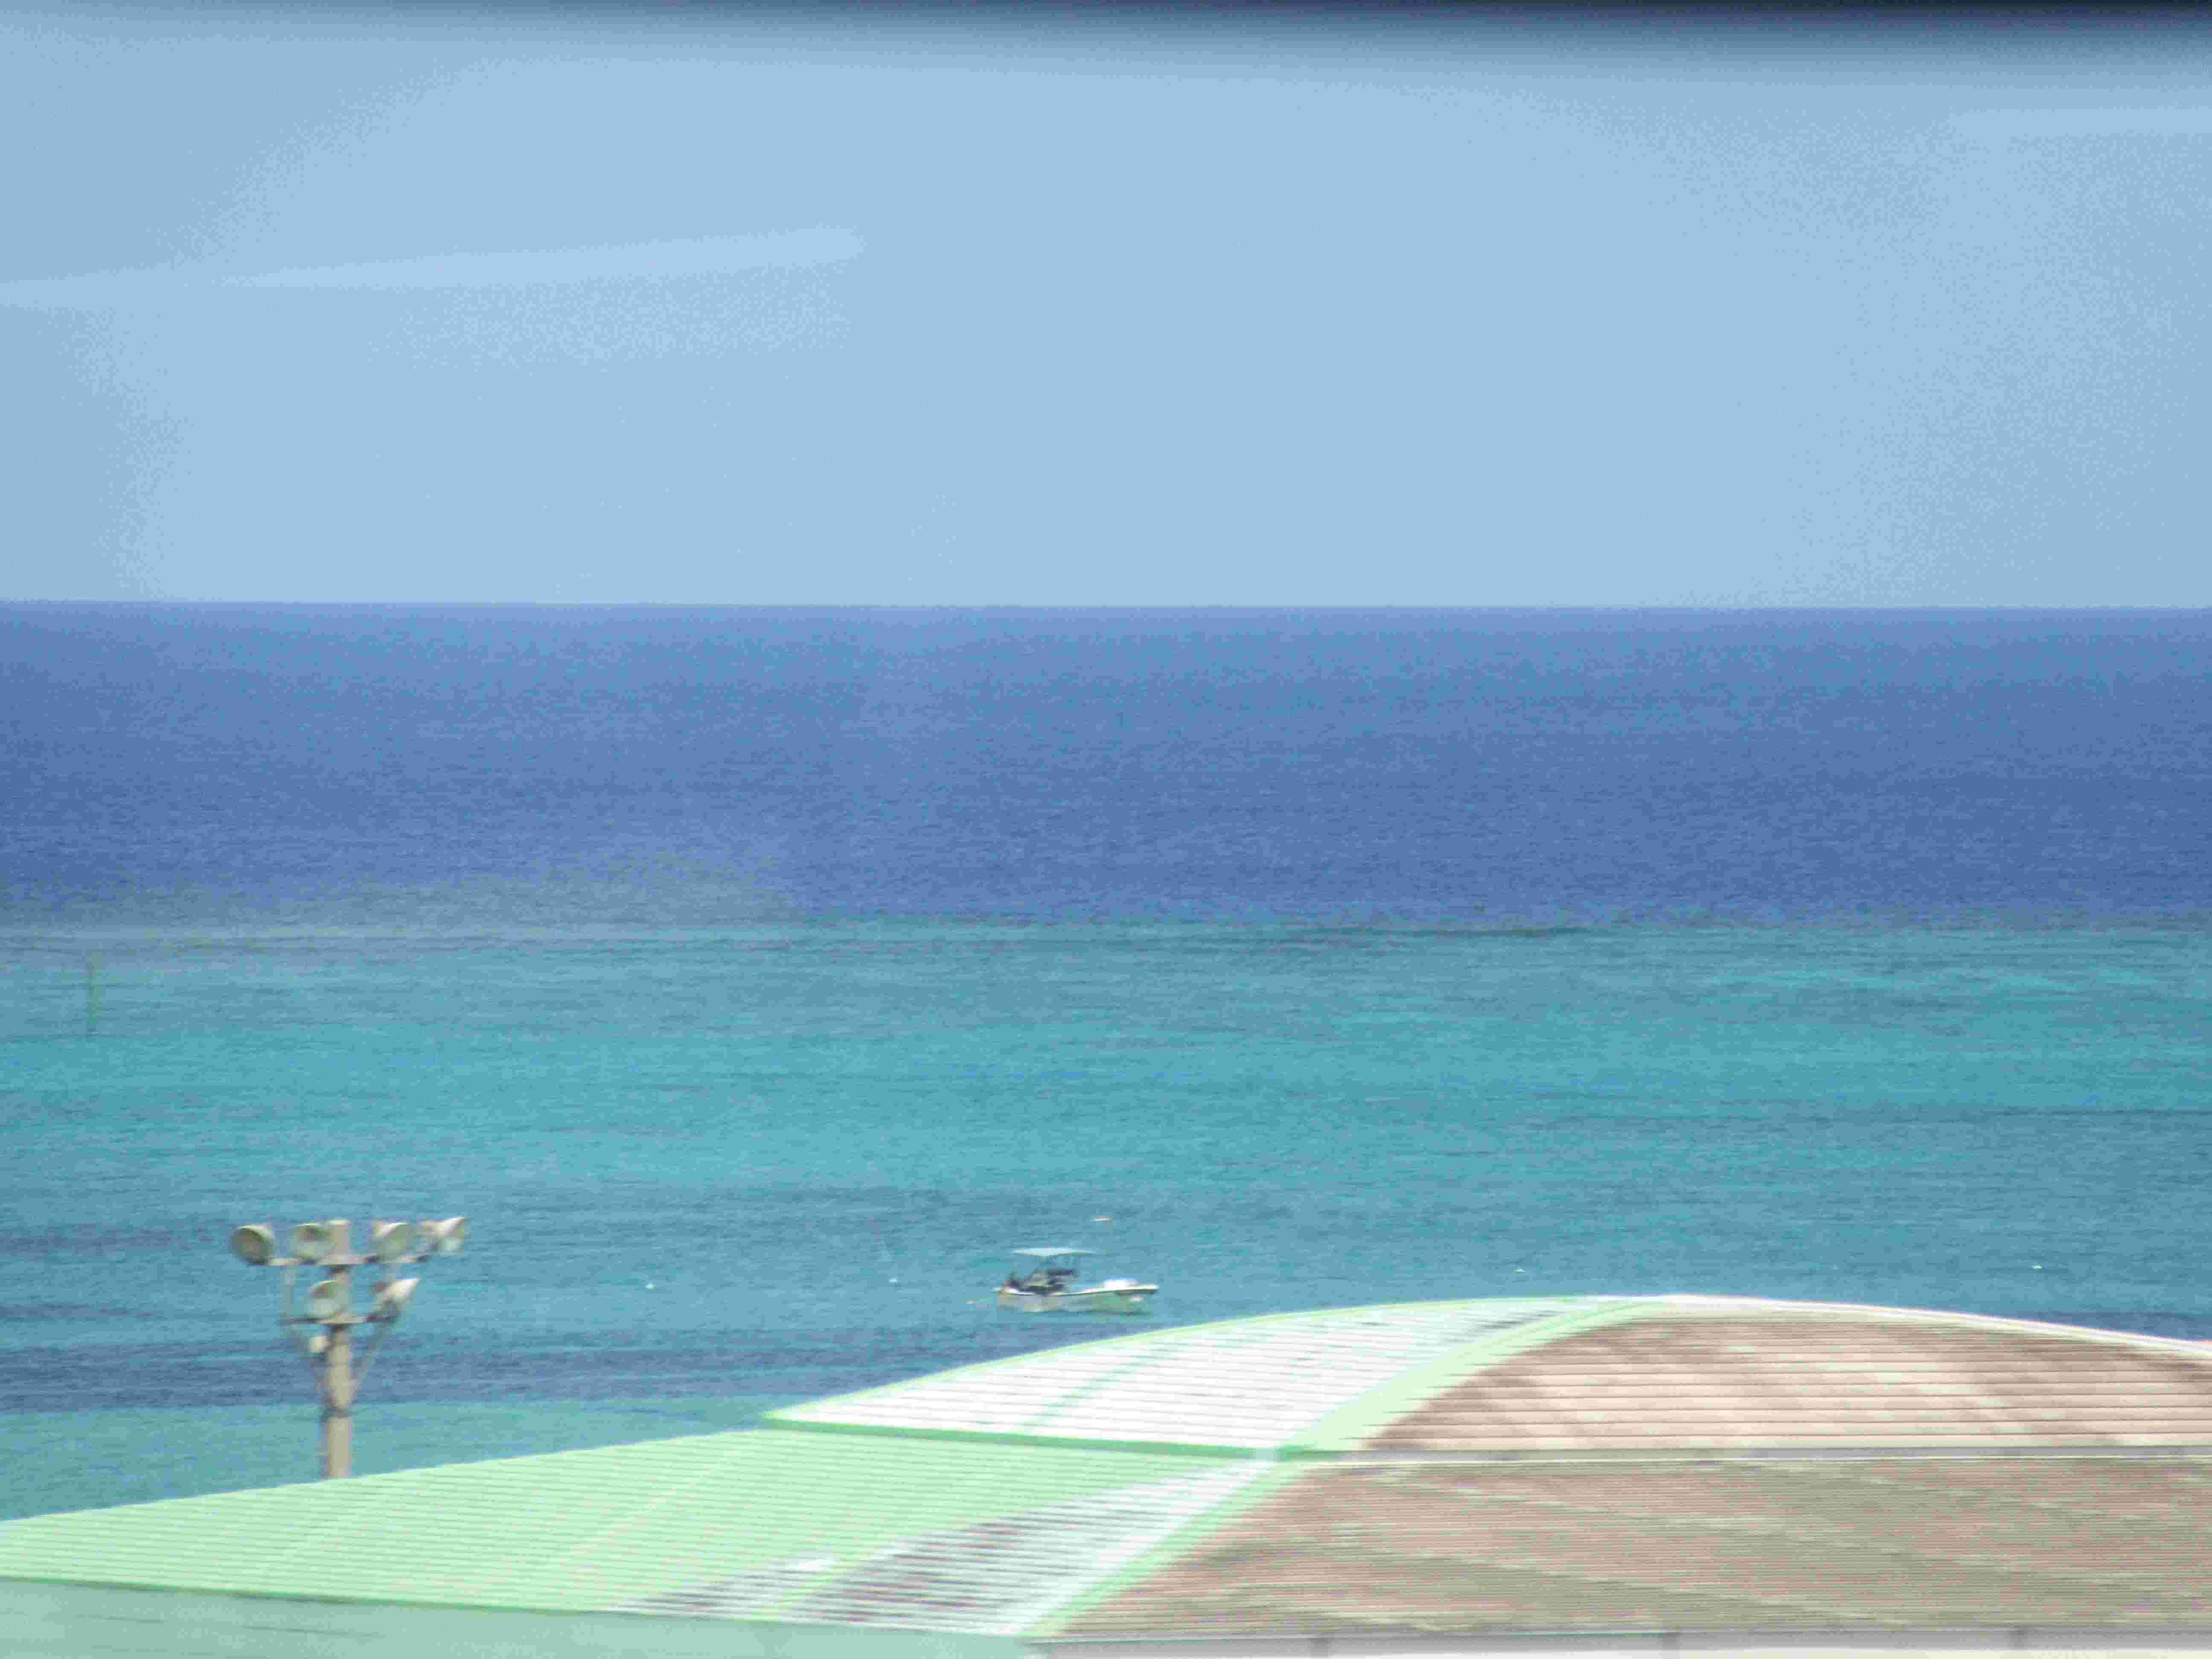 バスの車窓から見える、沖縄の海。